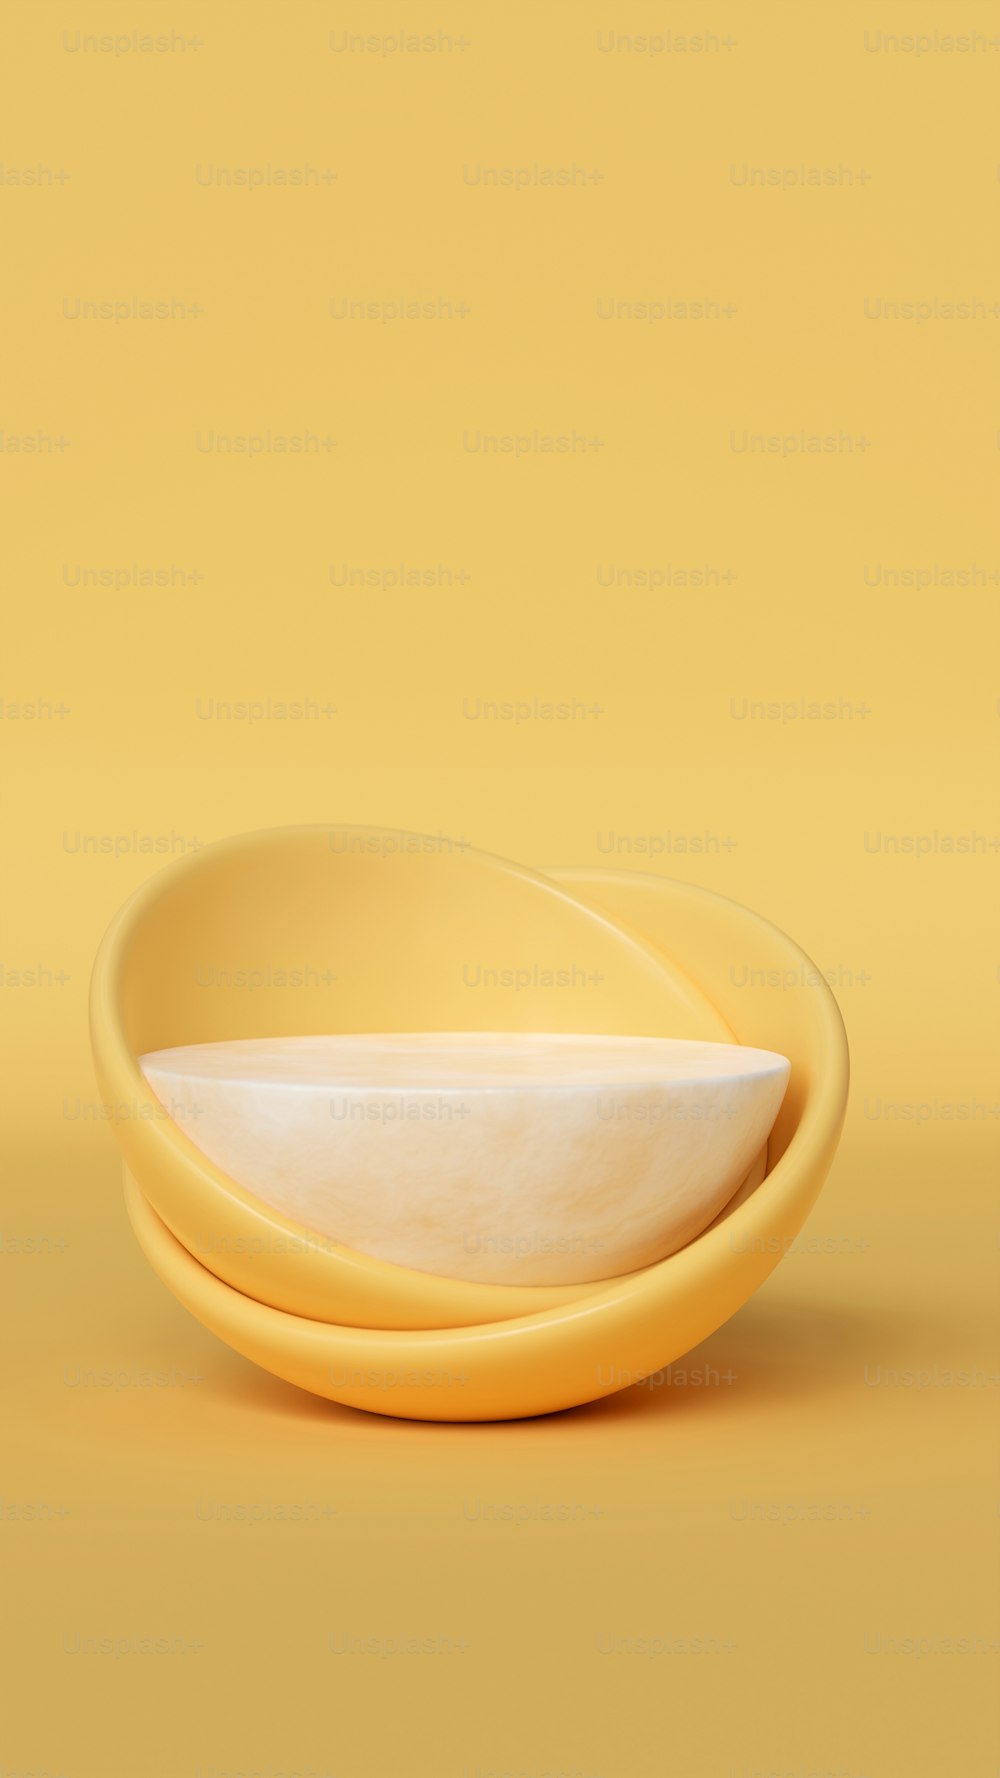 un plato amarillo con un tazón blanco encima